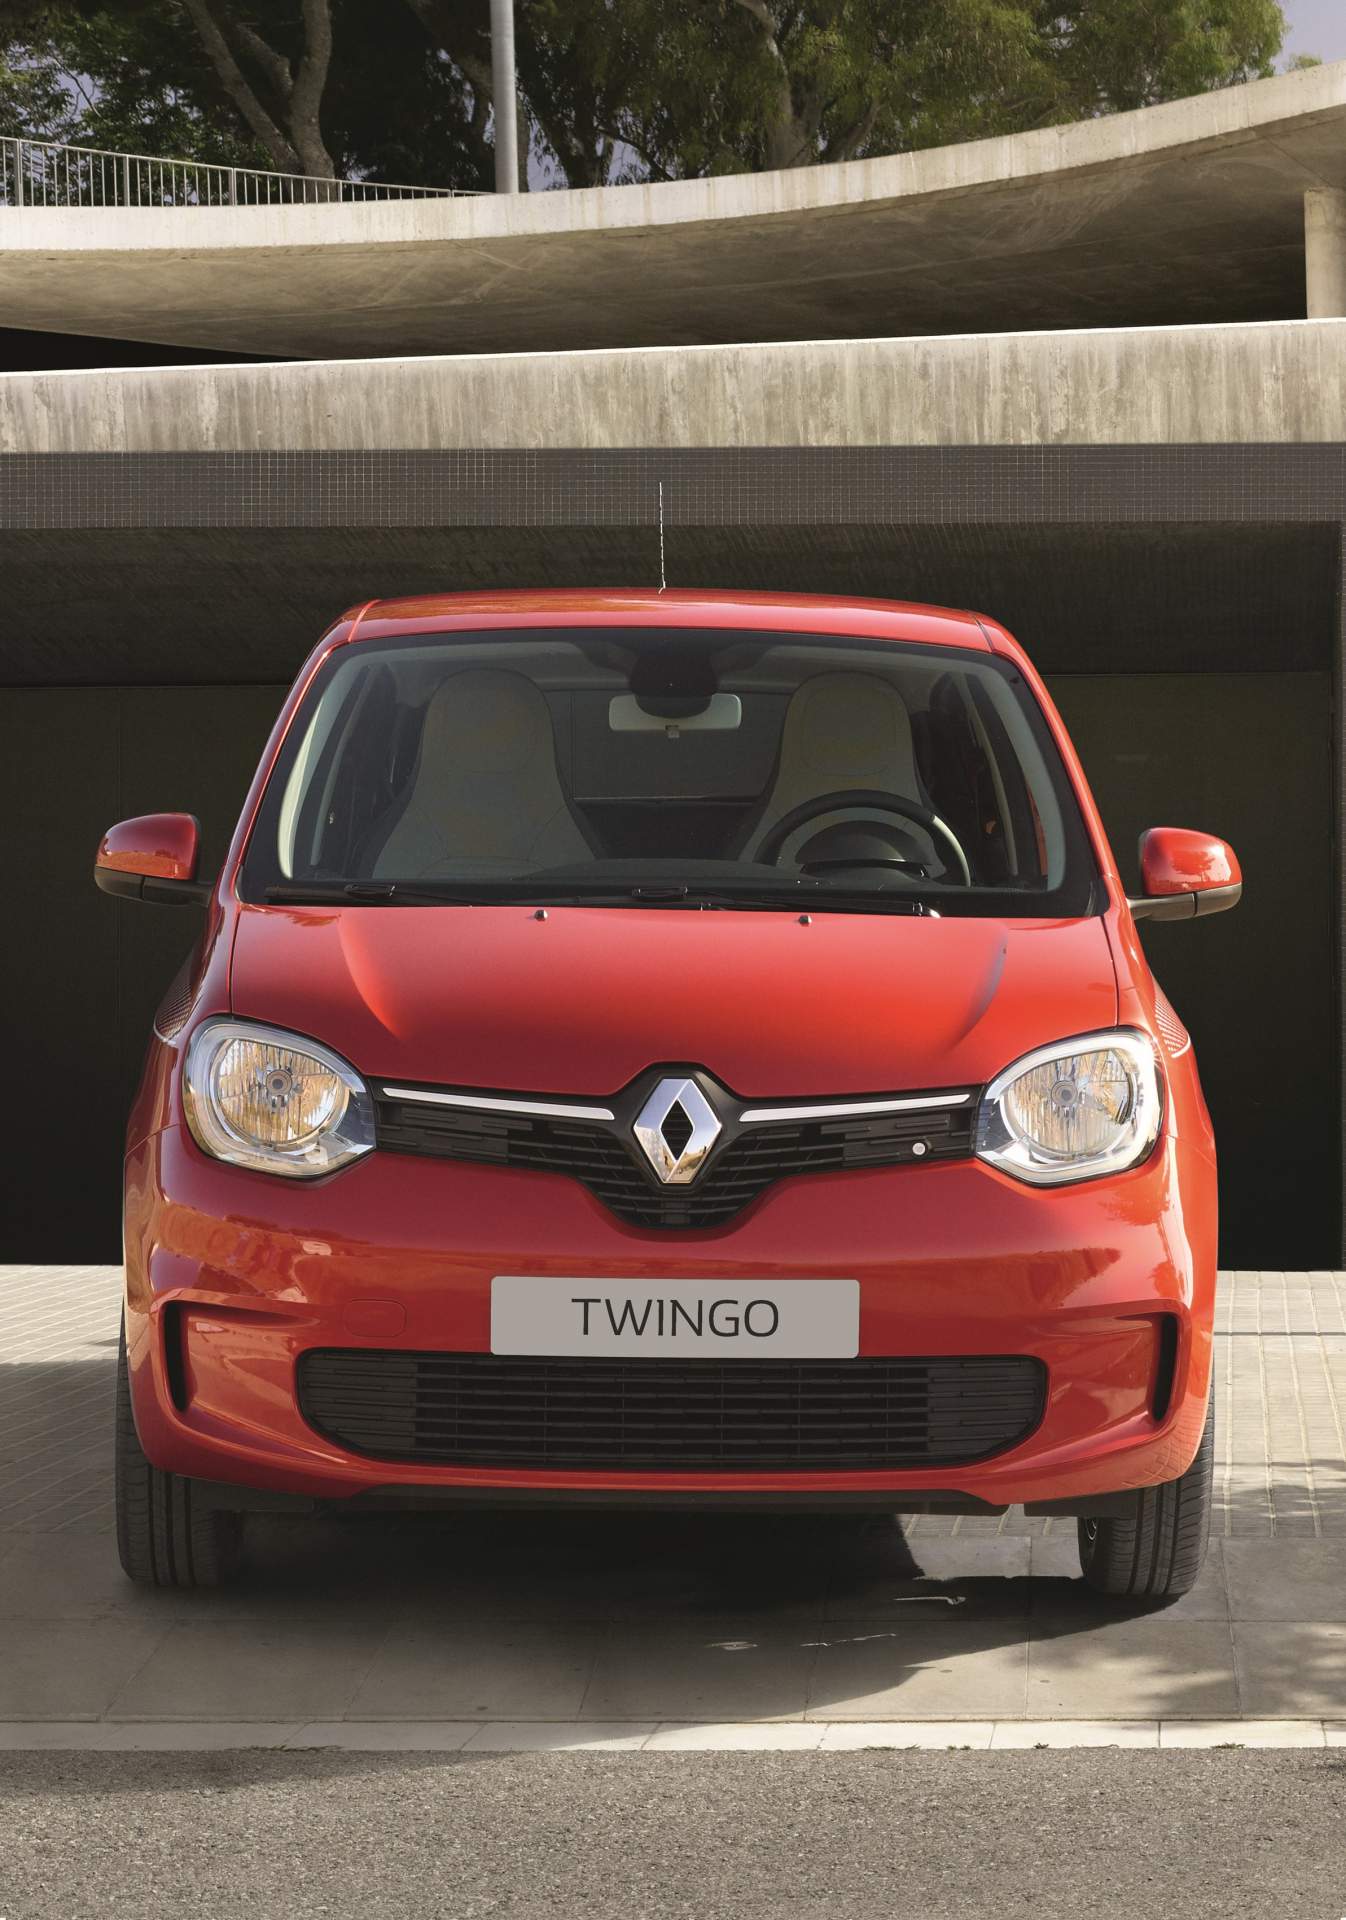 Renault Twingo resim galerisi (22.01.2018)